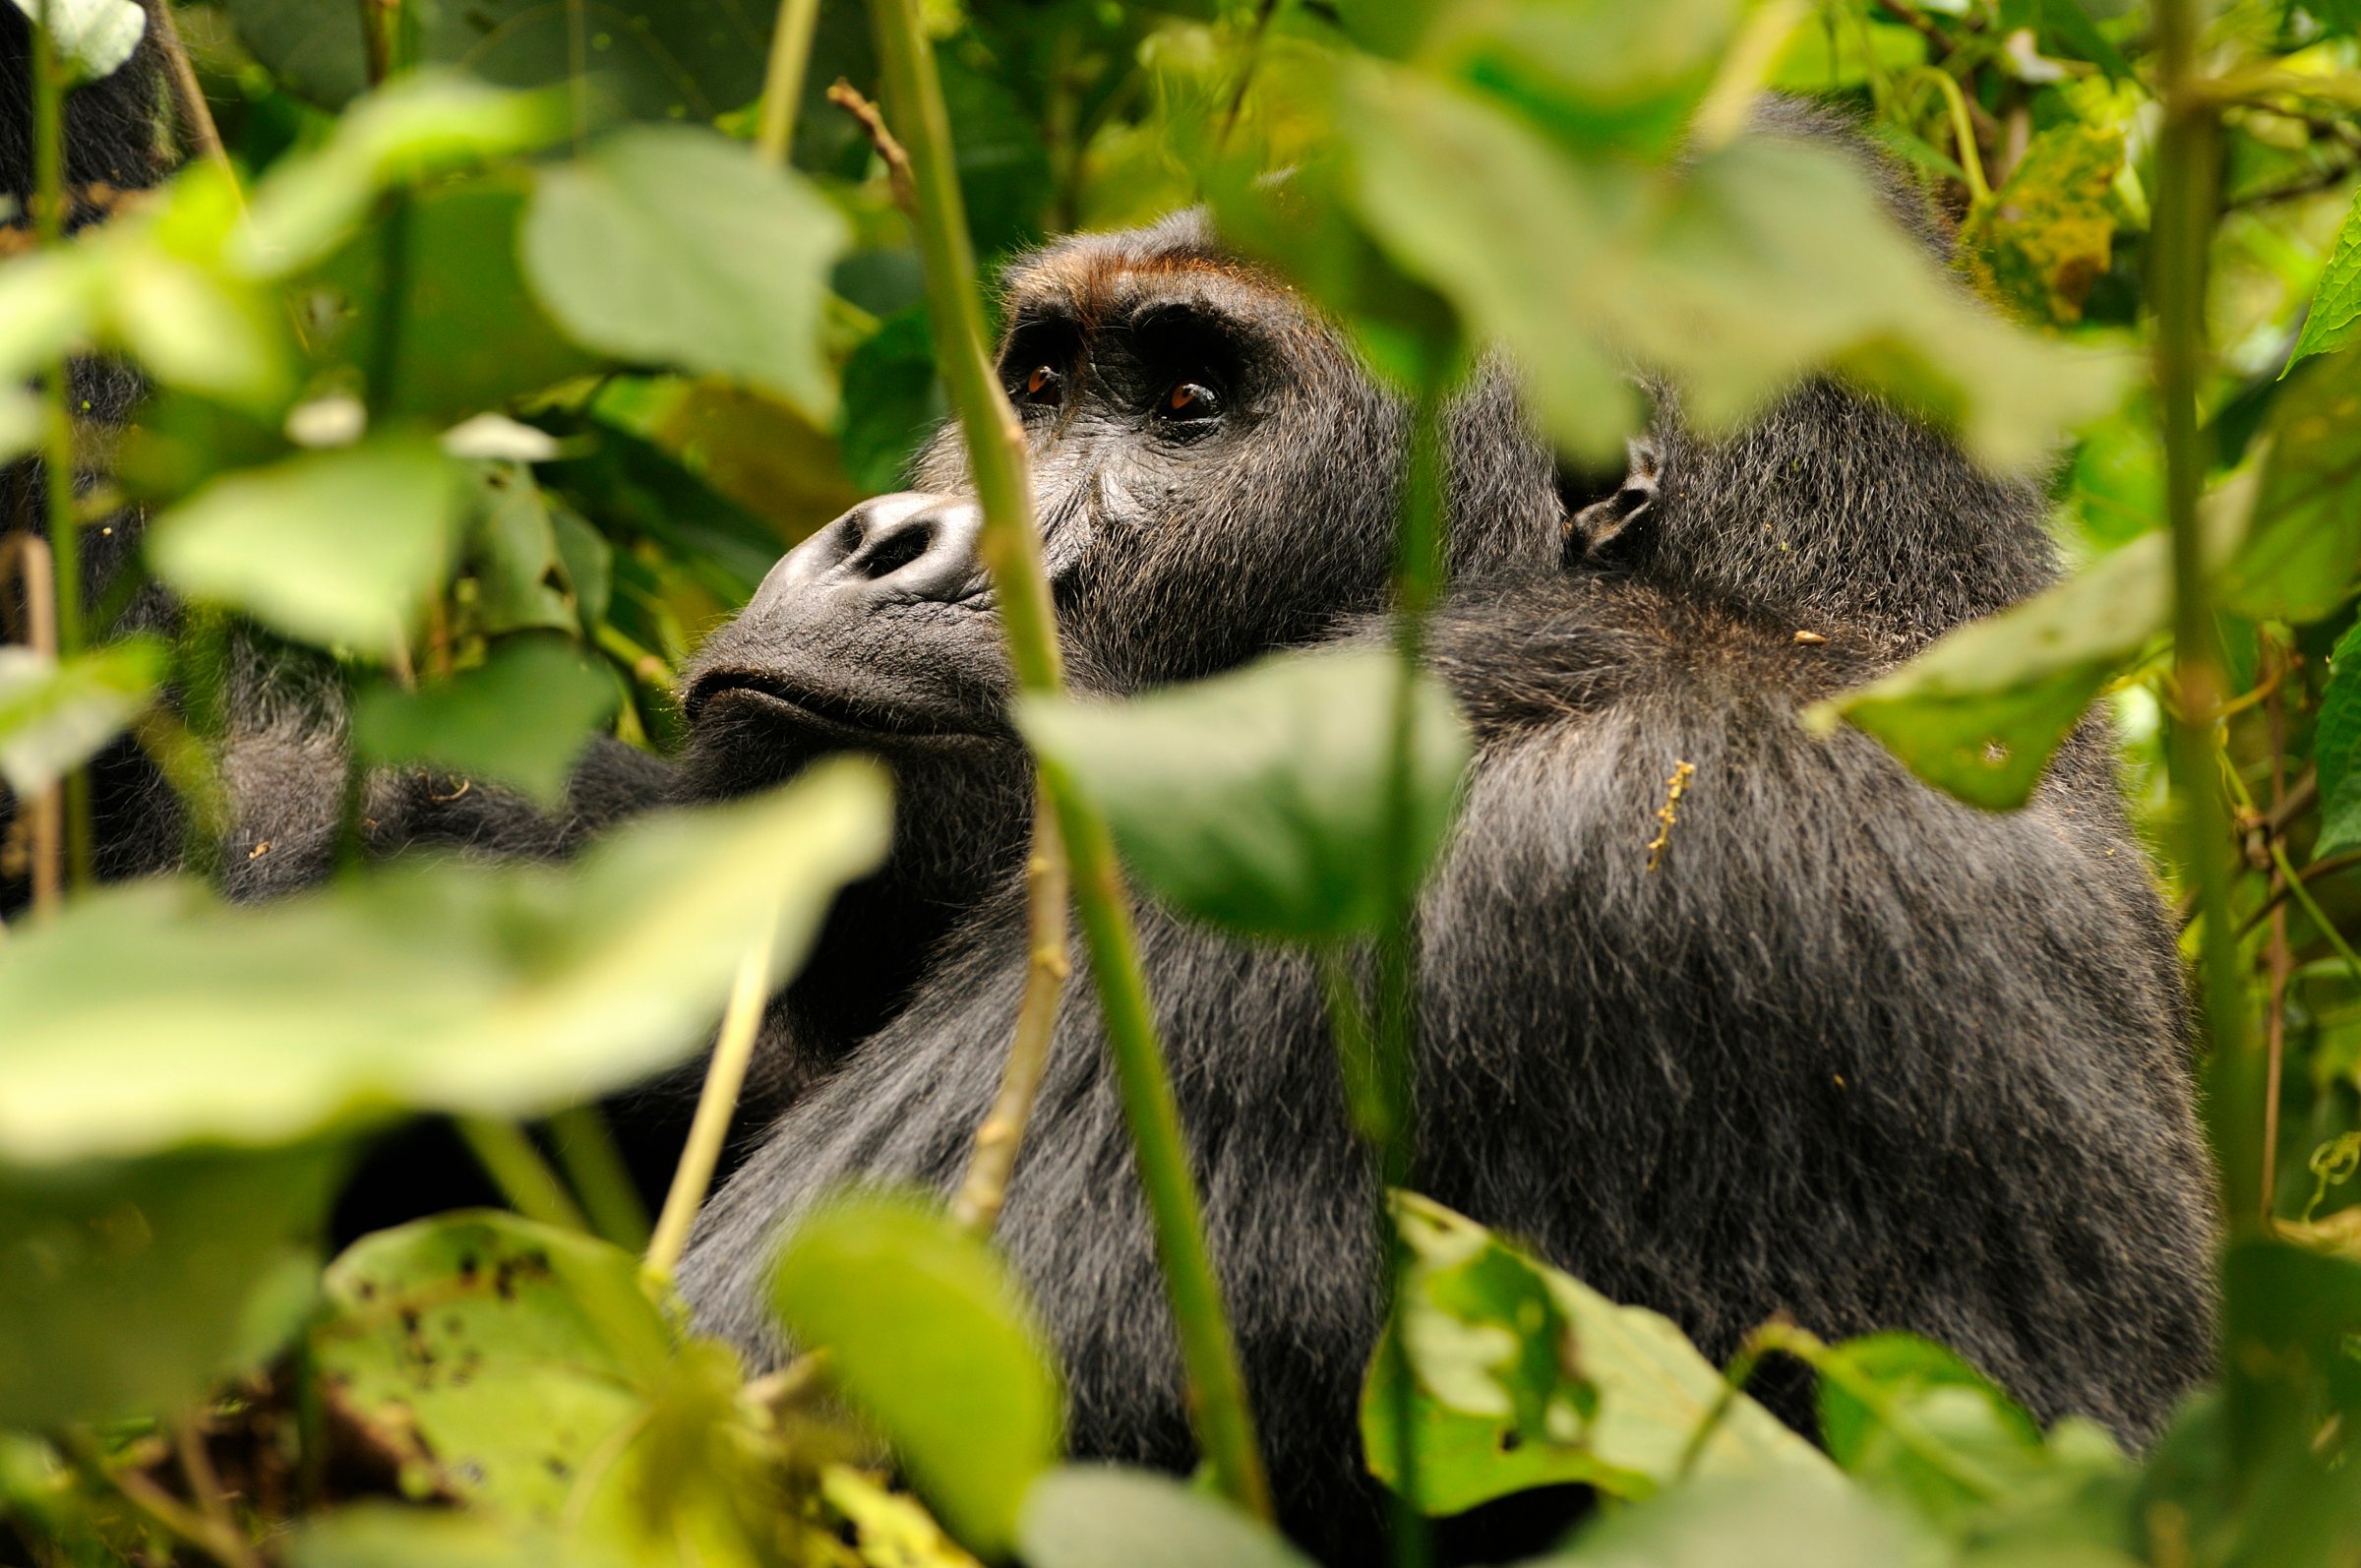 grauers gorilla extinction primates